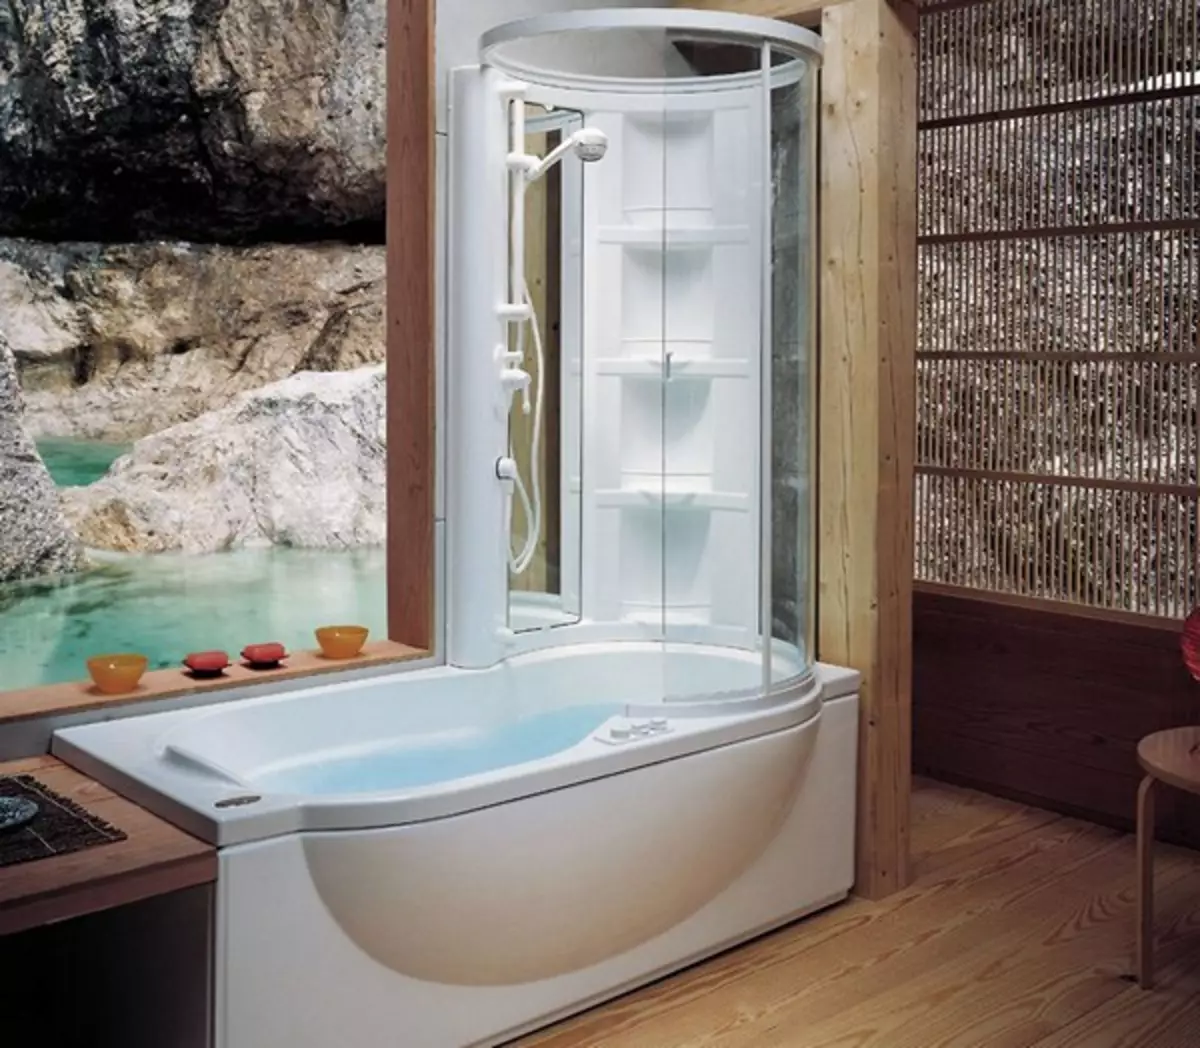 Shower cabin kasama ng banyo